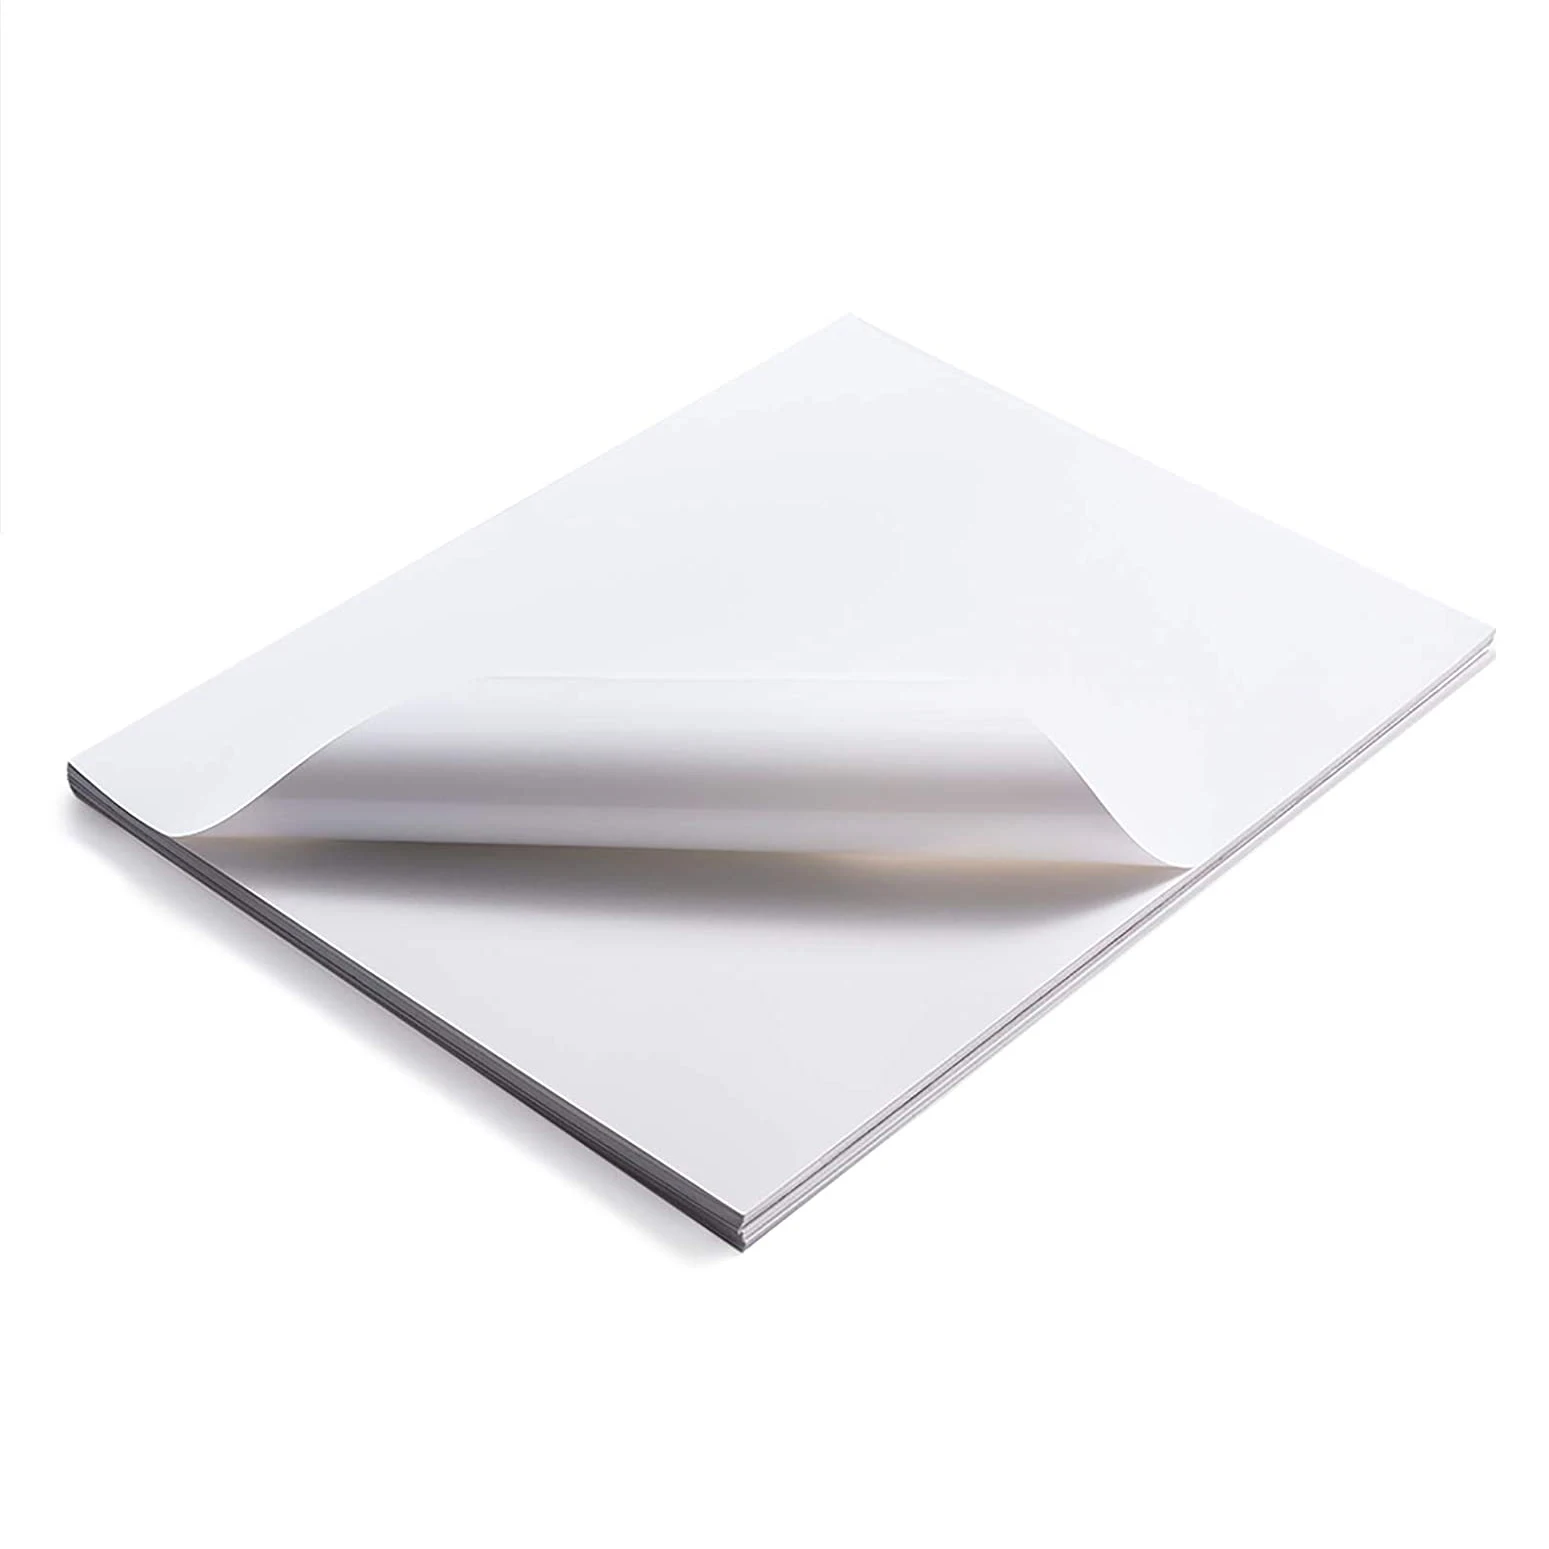 100pcs papier autocollant en vinyle imperméable à l'eau, papier autocollant  en vinyle brillant, papier autocollant en vinyle imprimable pour imprimante  à jet d'encre, blanc mat